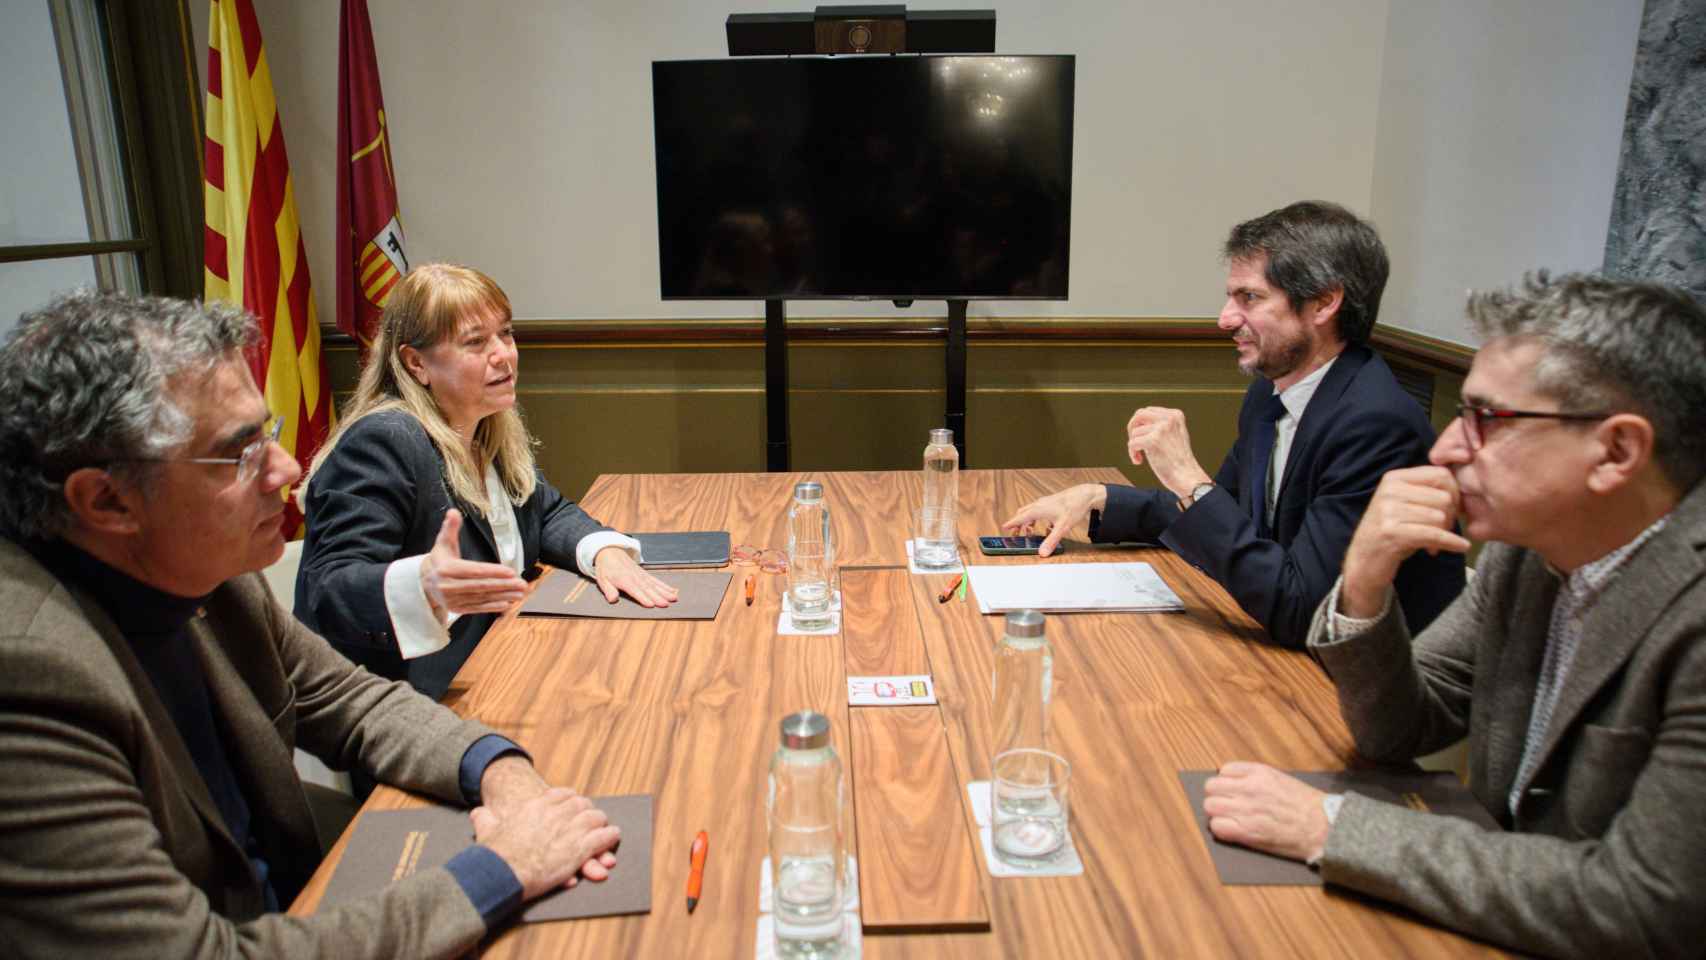 La reunión entre Natàlia Garriga y Jordi Fort, 'consellera' y secretario general de Cultura de la Generalitat, y Ernest Urtasun y Jordi Martí, ministro y secretario de Estado en la misma materia